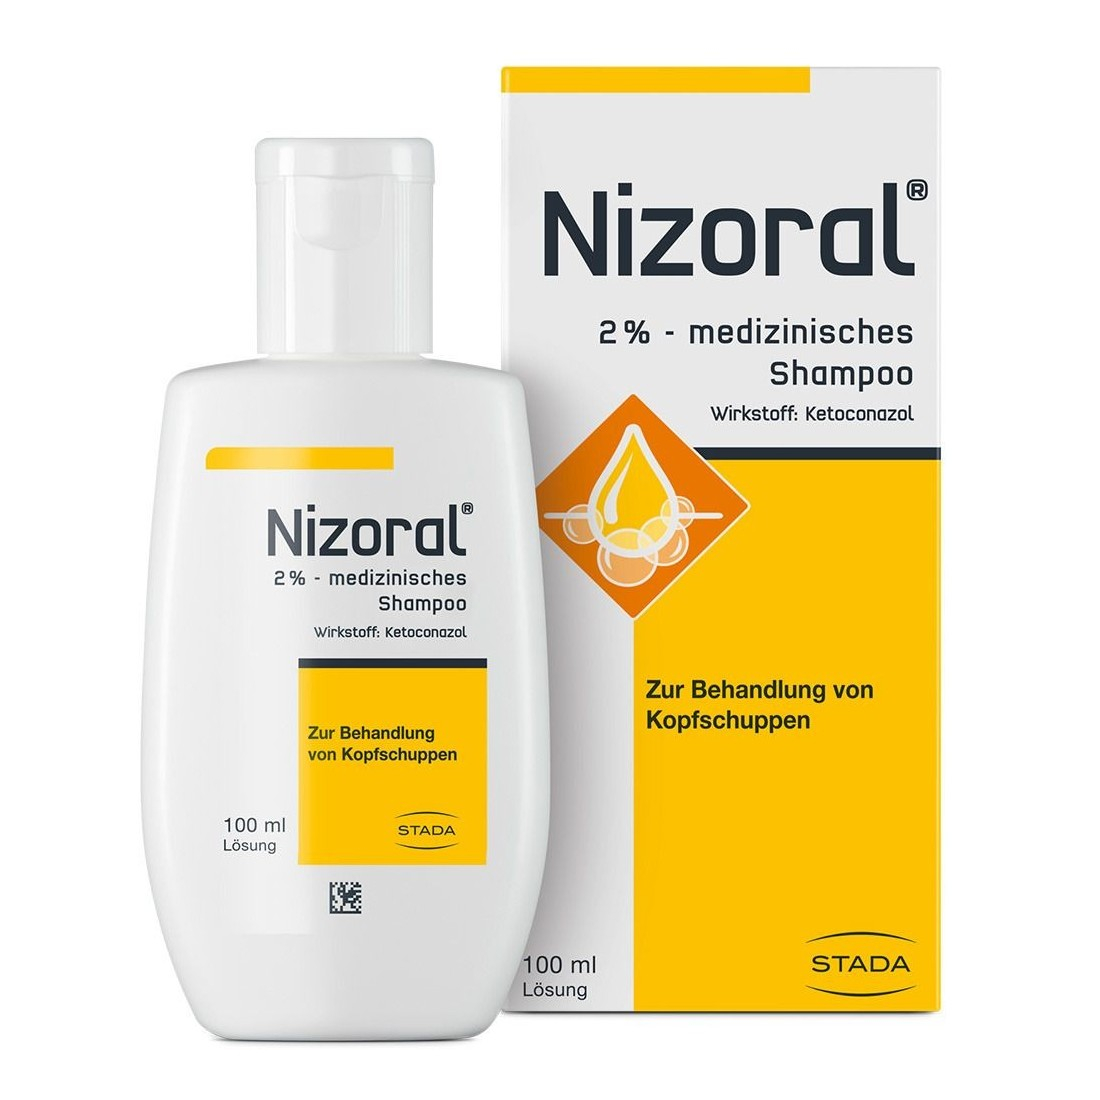 Ketoconazole shampoo